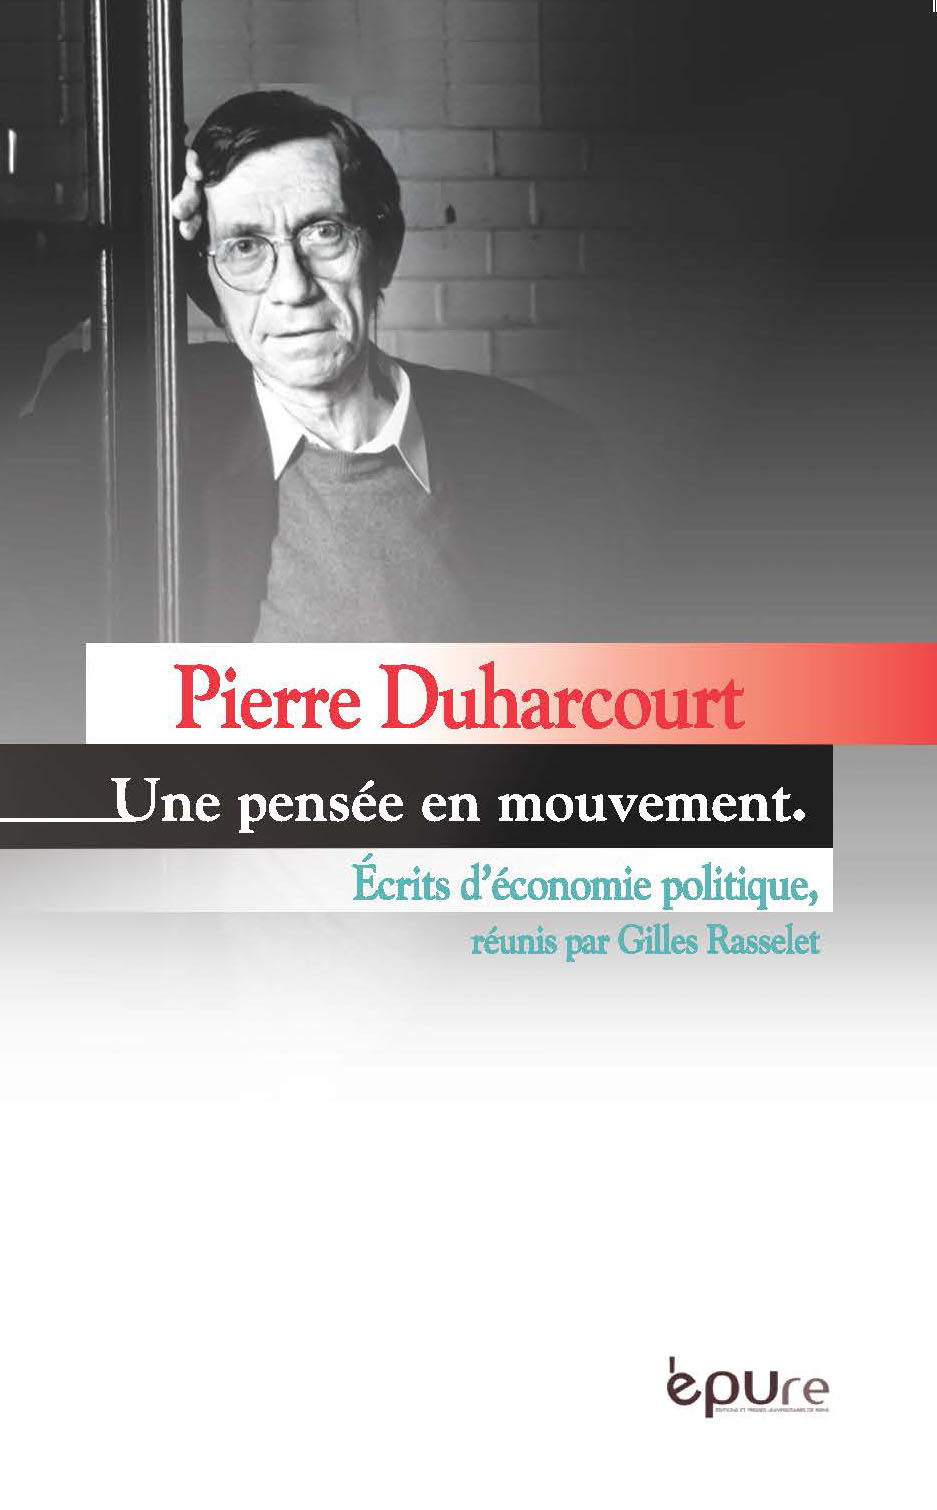 Pierre Duharcourt. Une pensée en mouvement